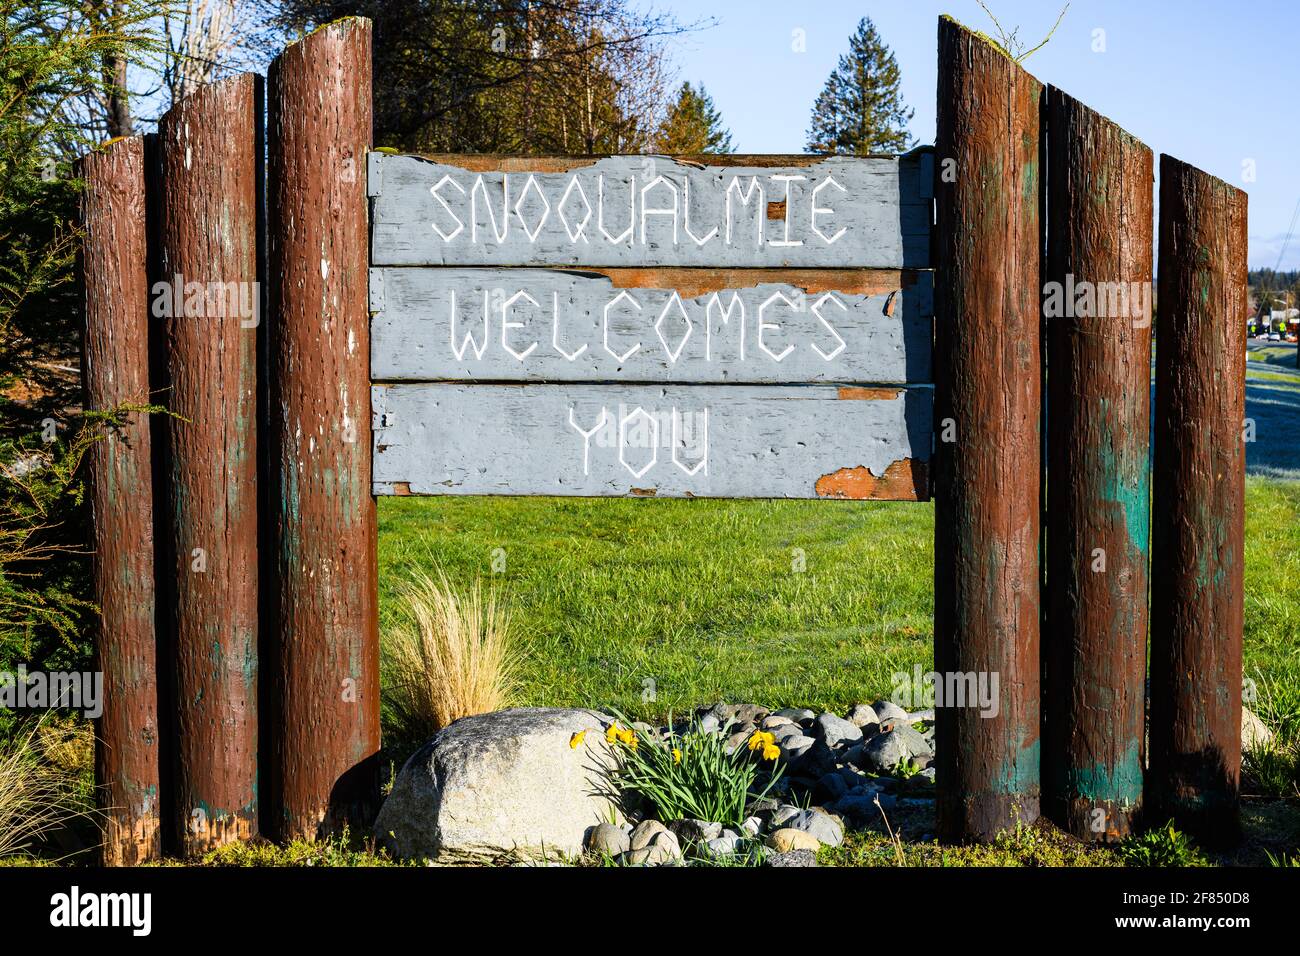 Snoqualmie, WA, USA - 11 avril 2021 ; Snoqualmie vous accueille sur panneau en bois soutenu par des poteaux de log dans la ville de comté de King est dans l'ouest de Washington Banque D'Images